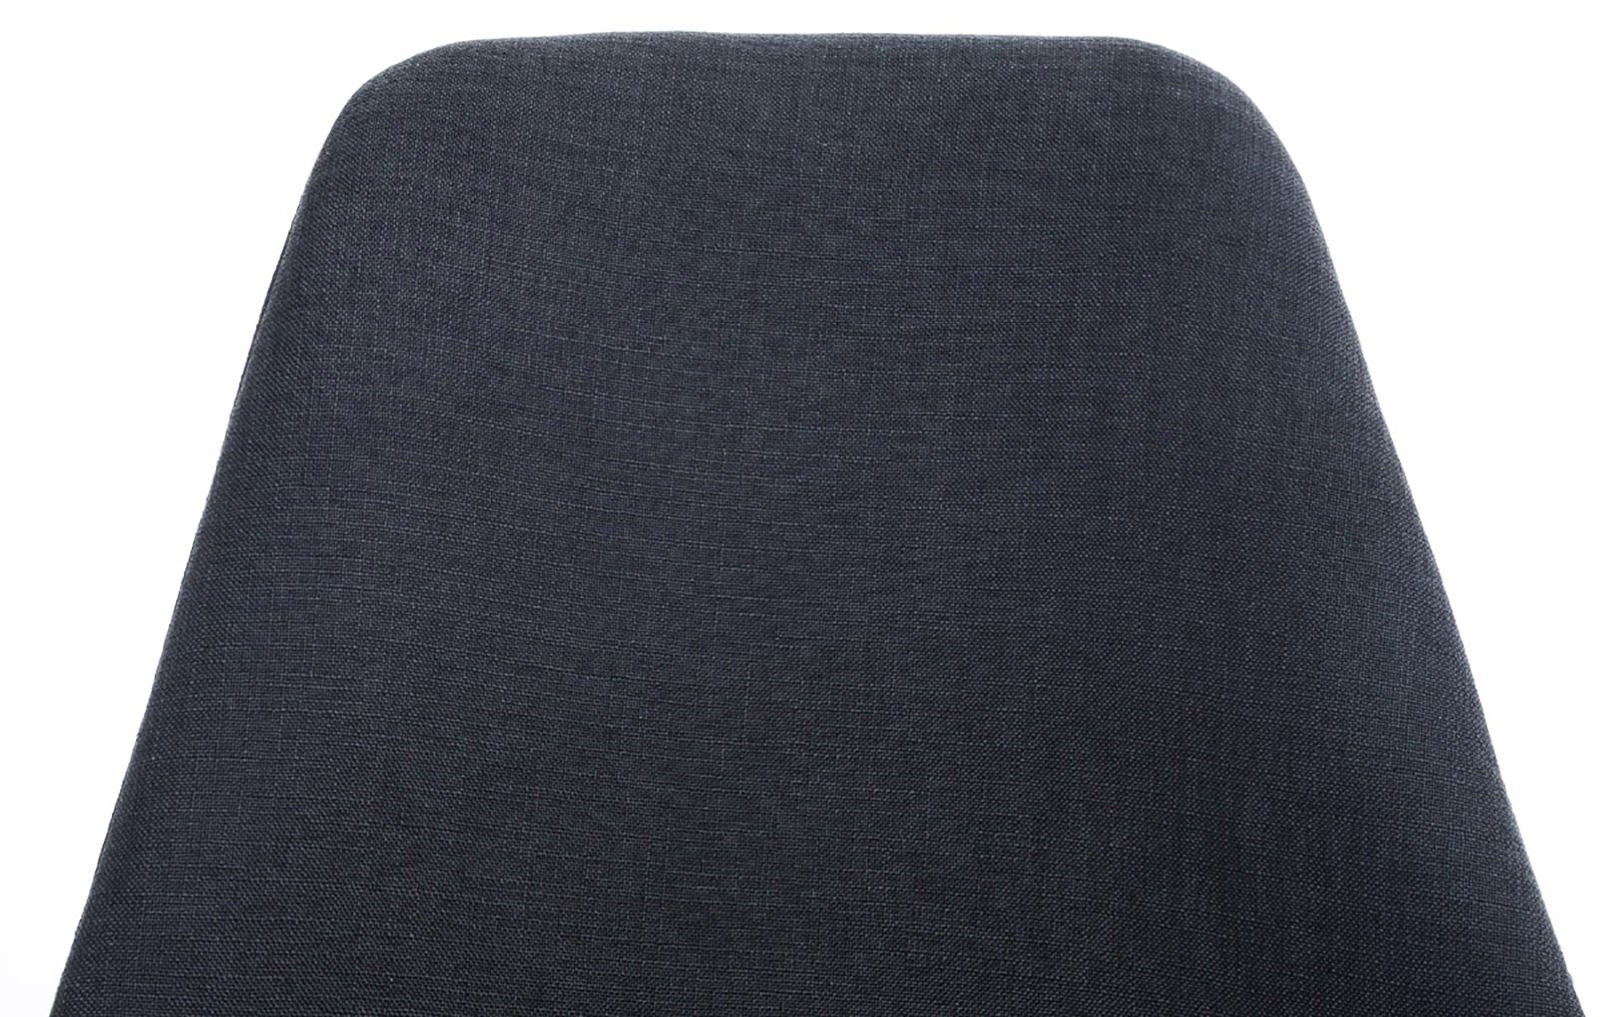 Pegleg Stuhl Square CLP schwarz weiß, Stoff Esszimmerstuhl